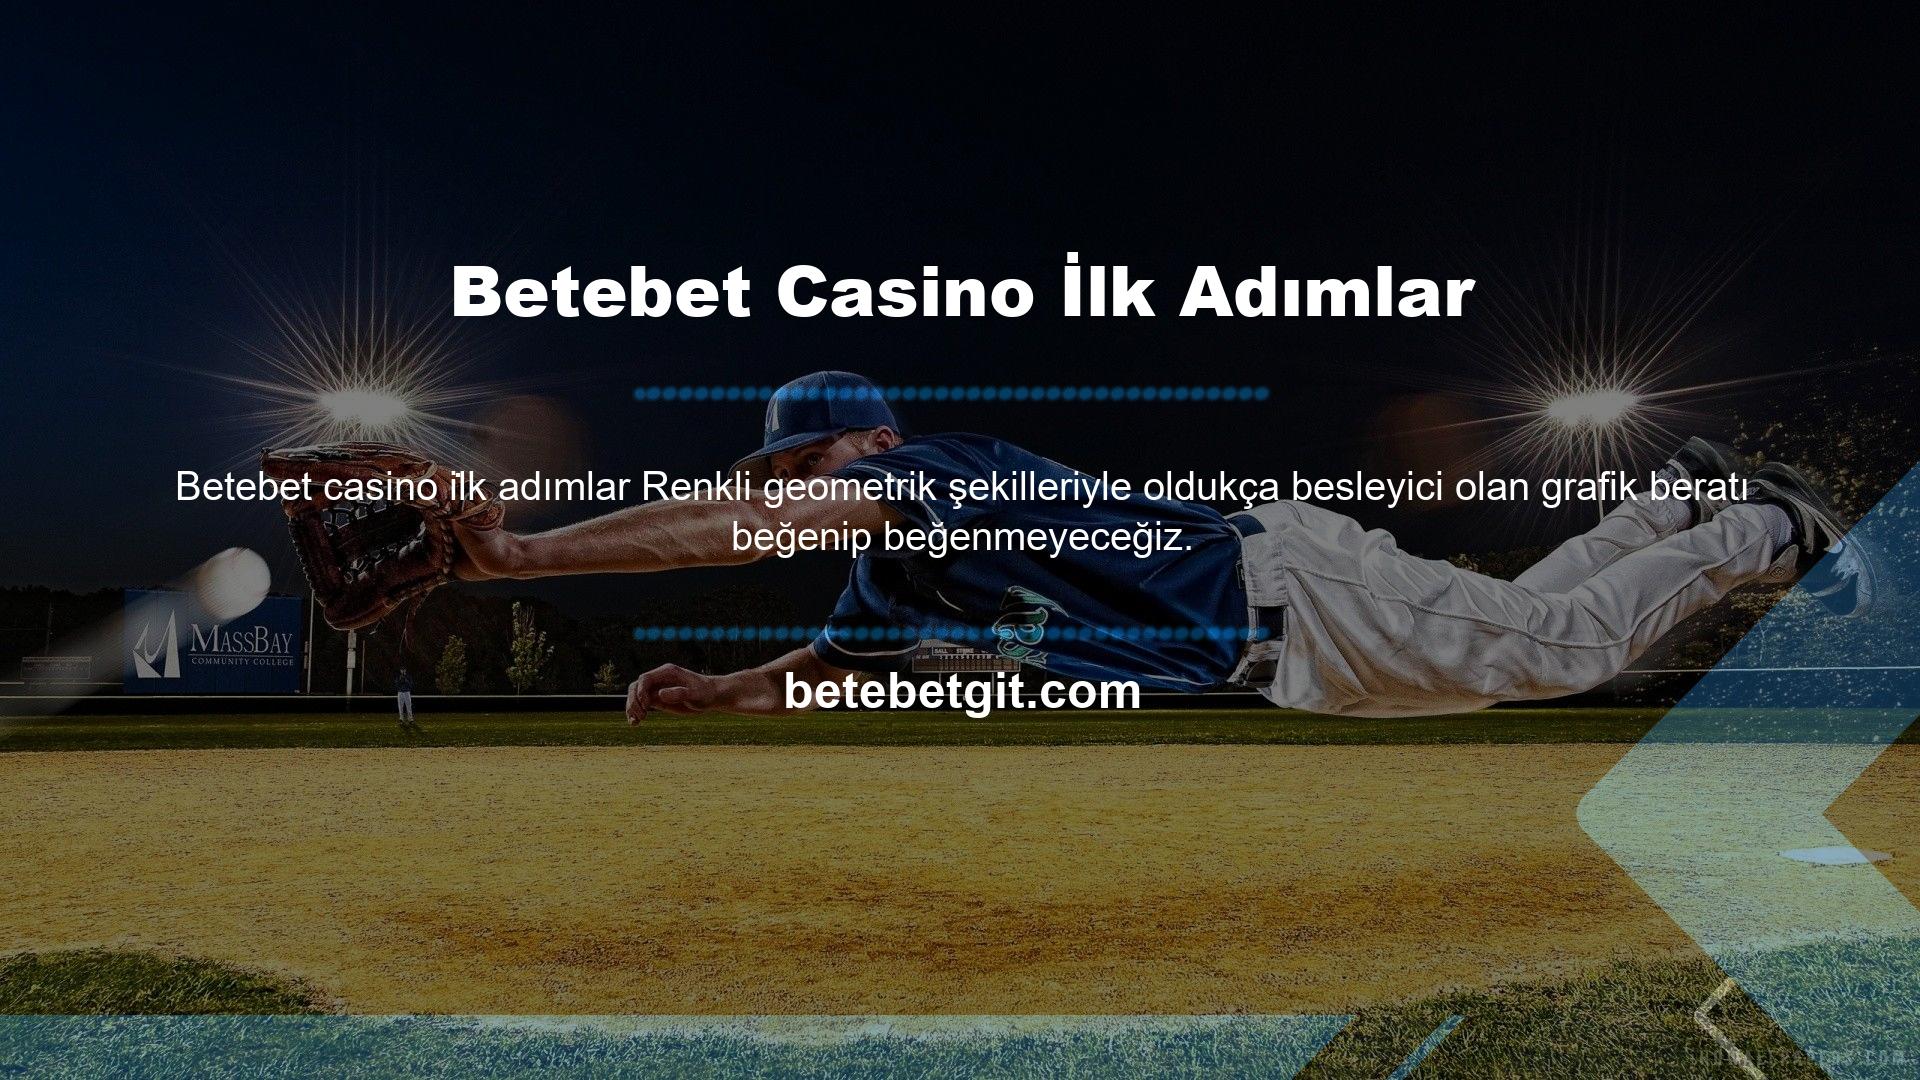 Betebet Casino ayrıca "maskot" logosunu takacak renkleri de duyurdu: Betebet, çan şeklinde bir şapka ile süslenmiş stilize bir maske ile